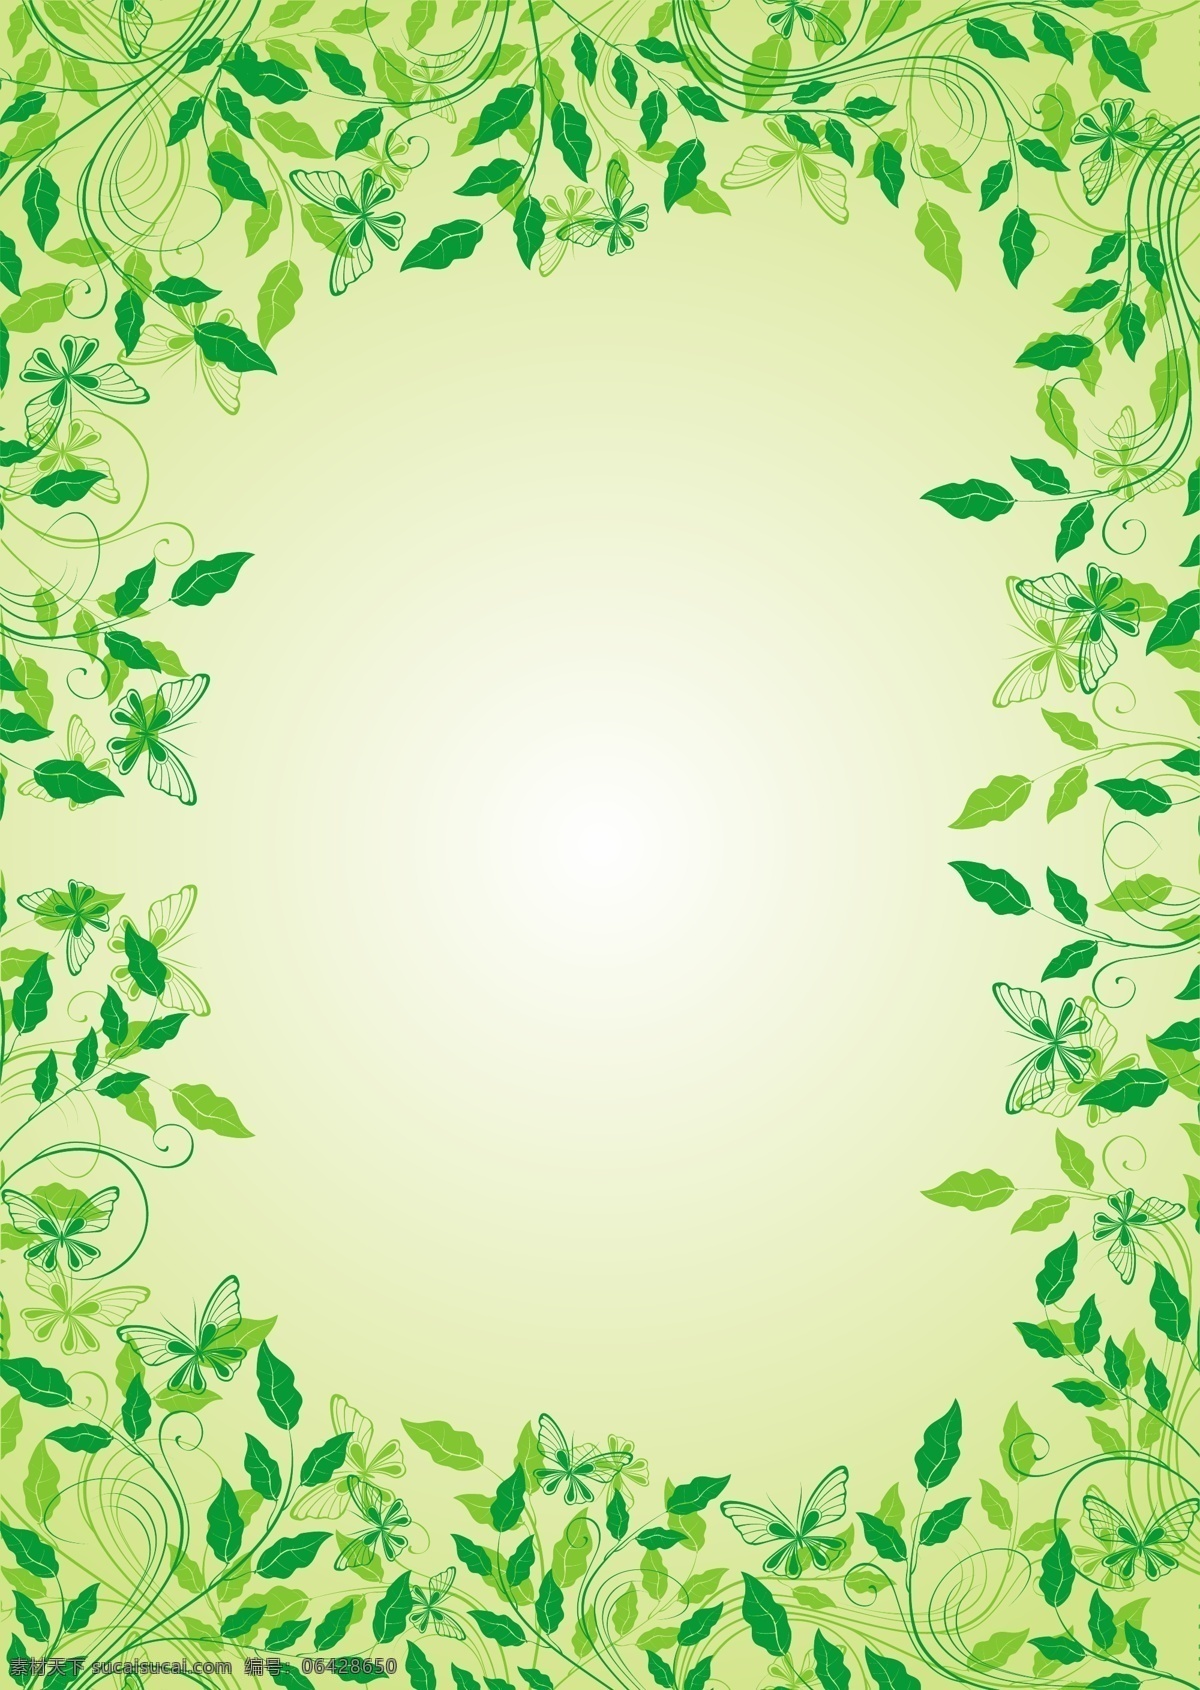 款 矢量 树叶 边框 eps格式 春季 春天 绿色边框 矢量花边 藤蔓 植物边框 免费 海报 海报背景图